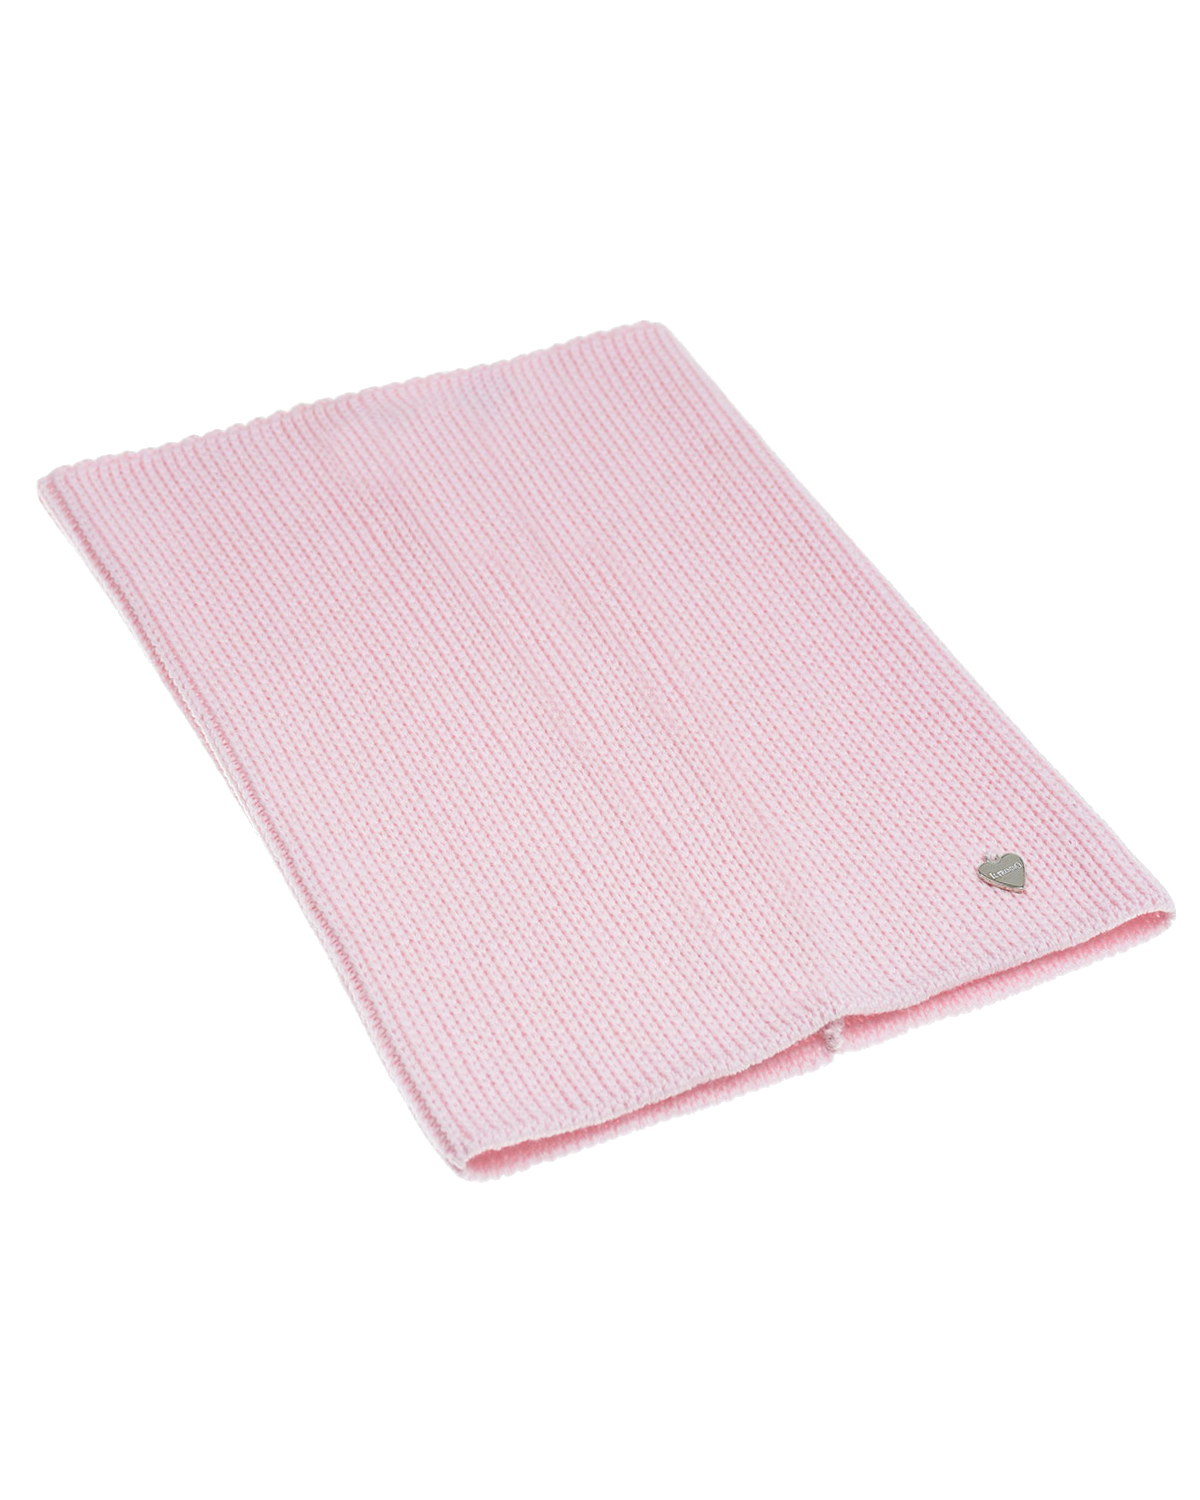 Шерстяной шарф-ворот розового цвета, 24х30 см Il Trenino детский, размер unica - фото 1